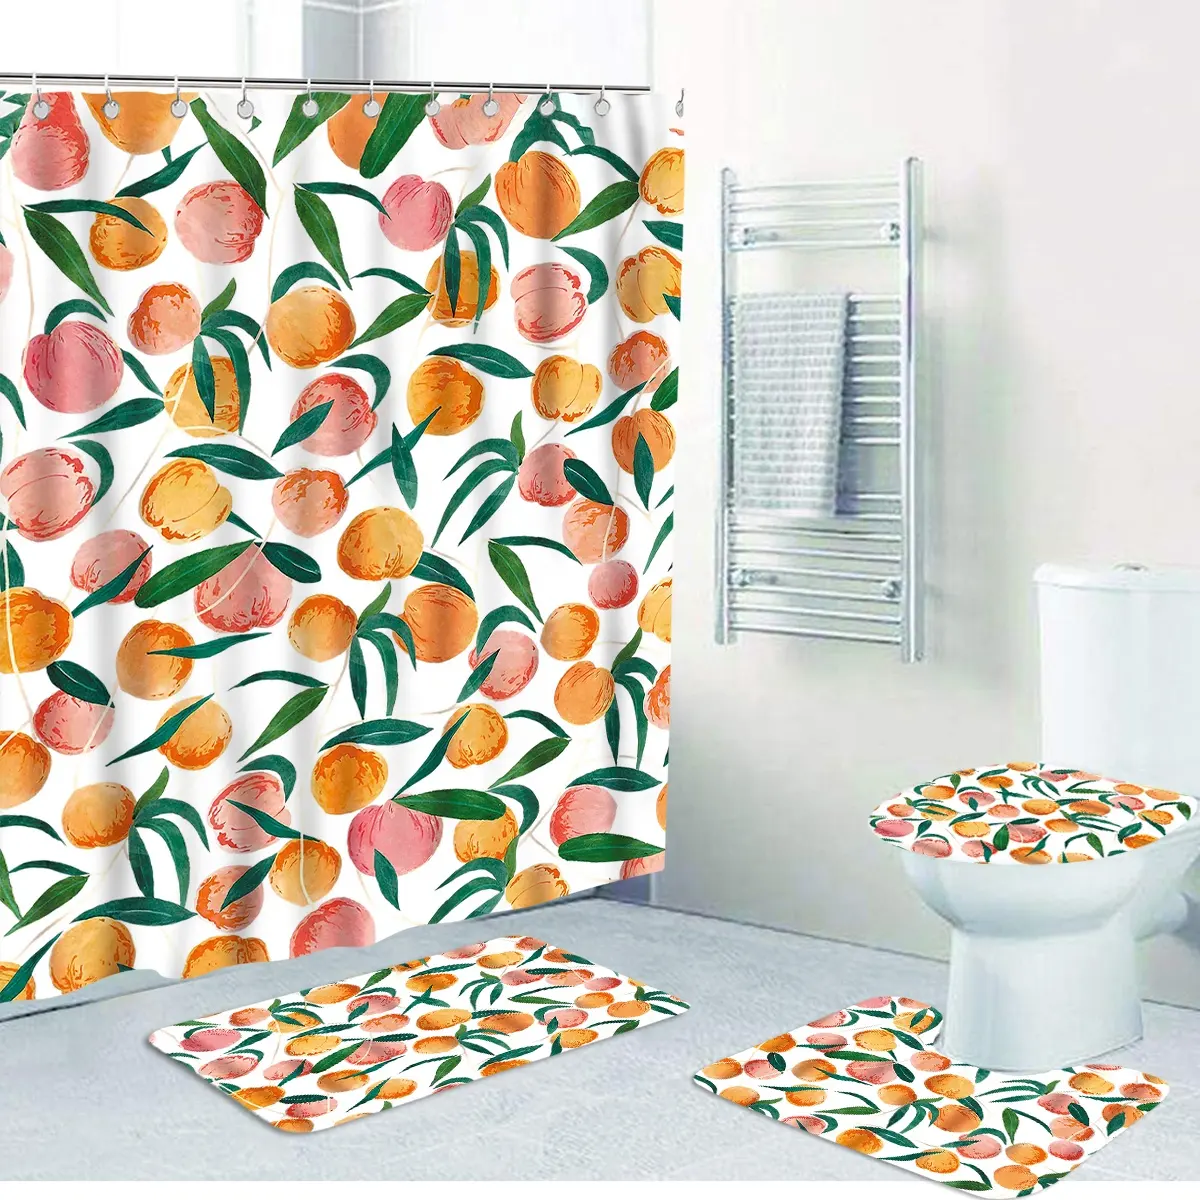 ม่านอาบน้ำ3ชิ้นสีส้มสีชมพูผลไม้ผ้าโพลีเอสเตอร์ Mouldpro กันน้ำของพีชห้องน้ำชุดม่านอาบน้ำที่มีพรม